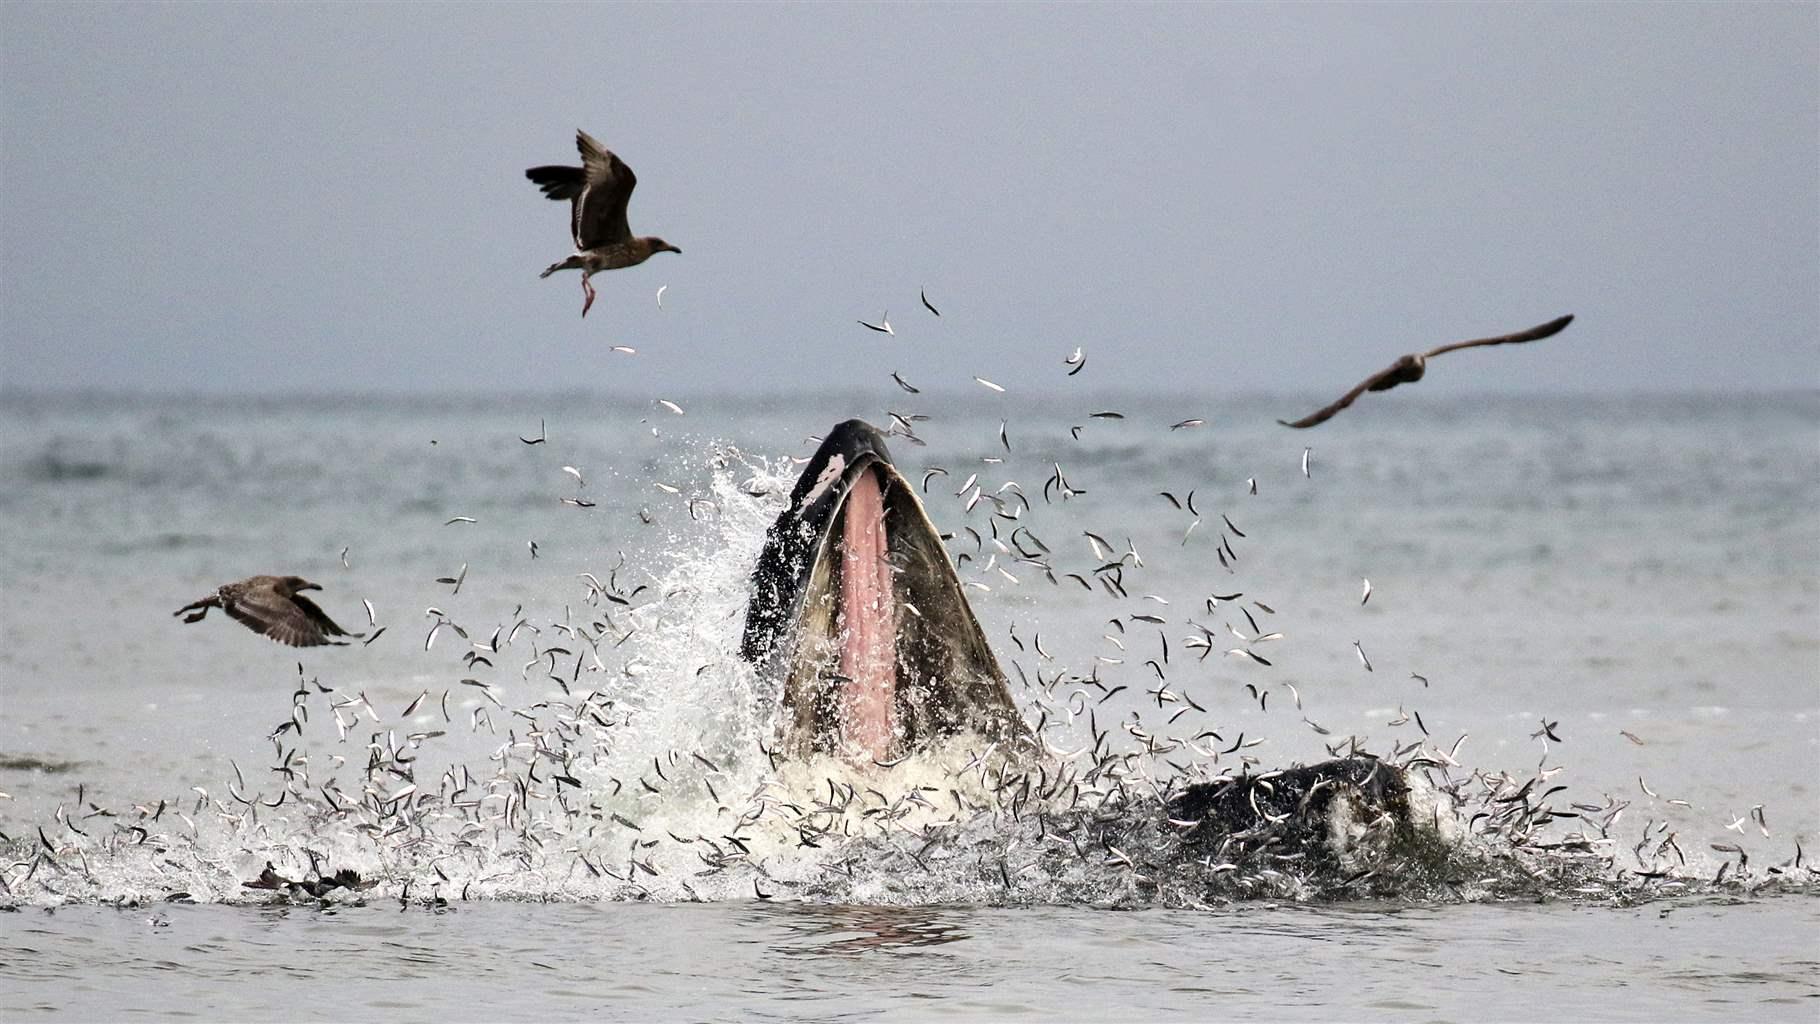 Whale lunge feeding